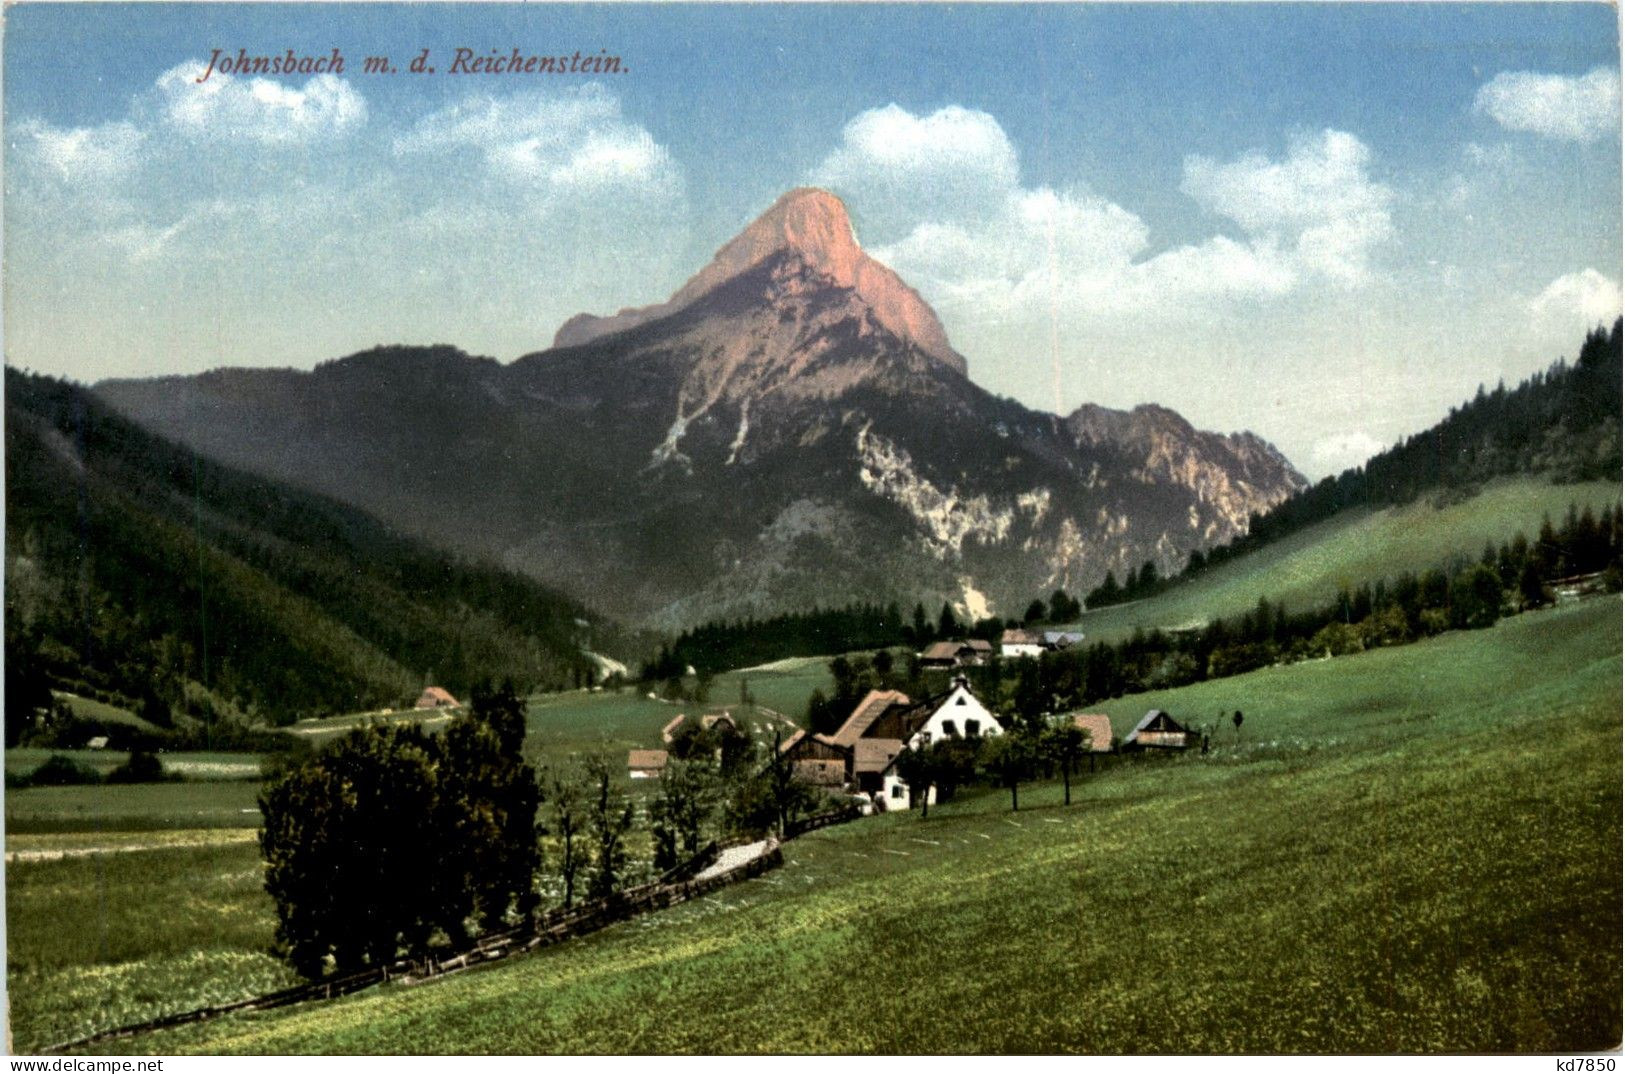 Gesäuse/Steiermark - Gesäuse, Johnsbach, M.d. Reichenstein - Gesäuse